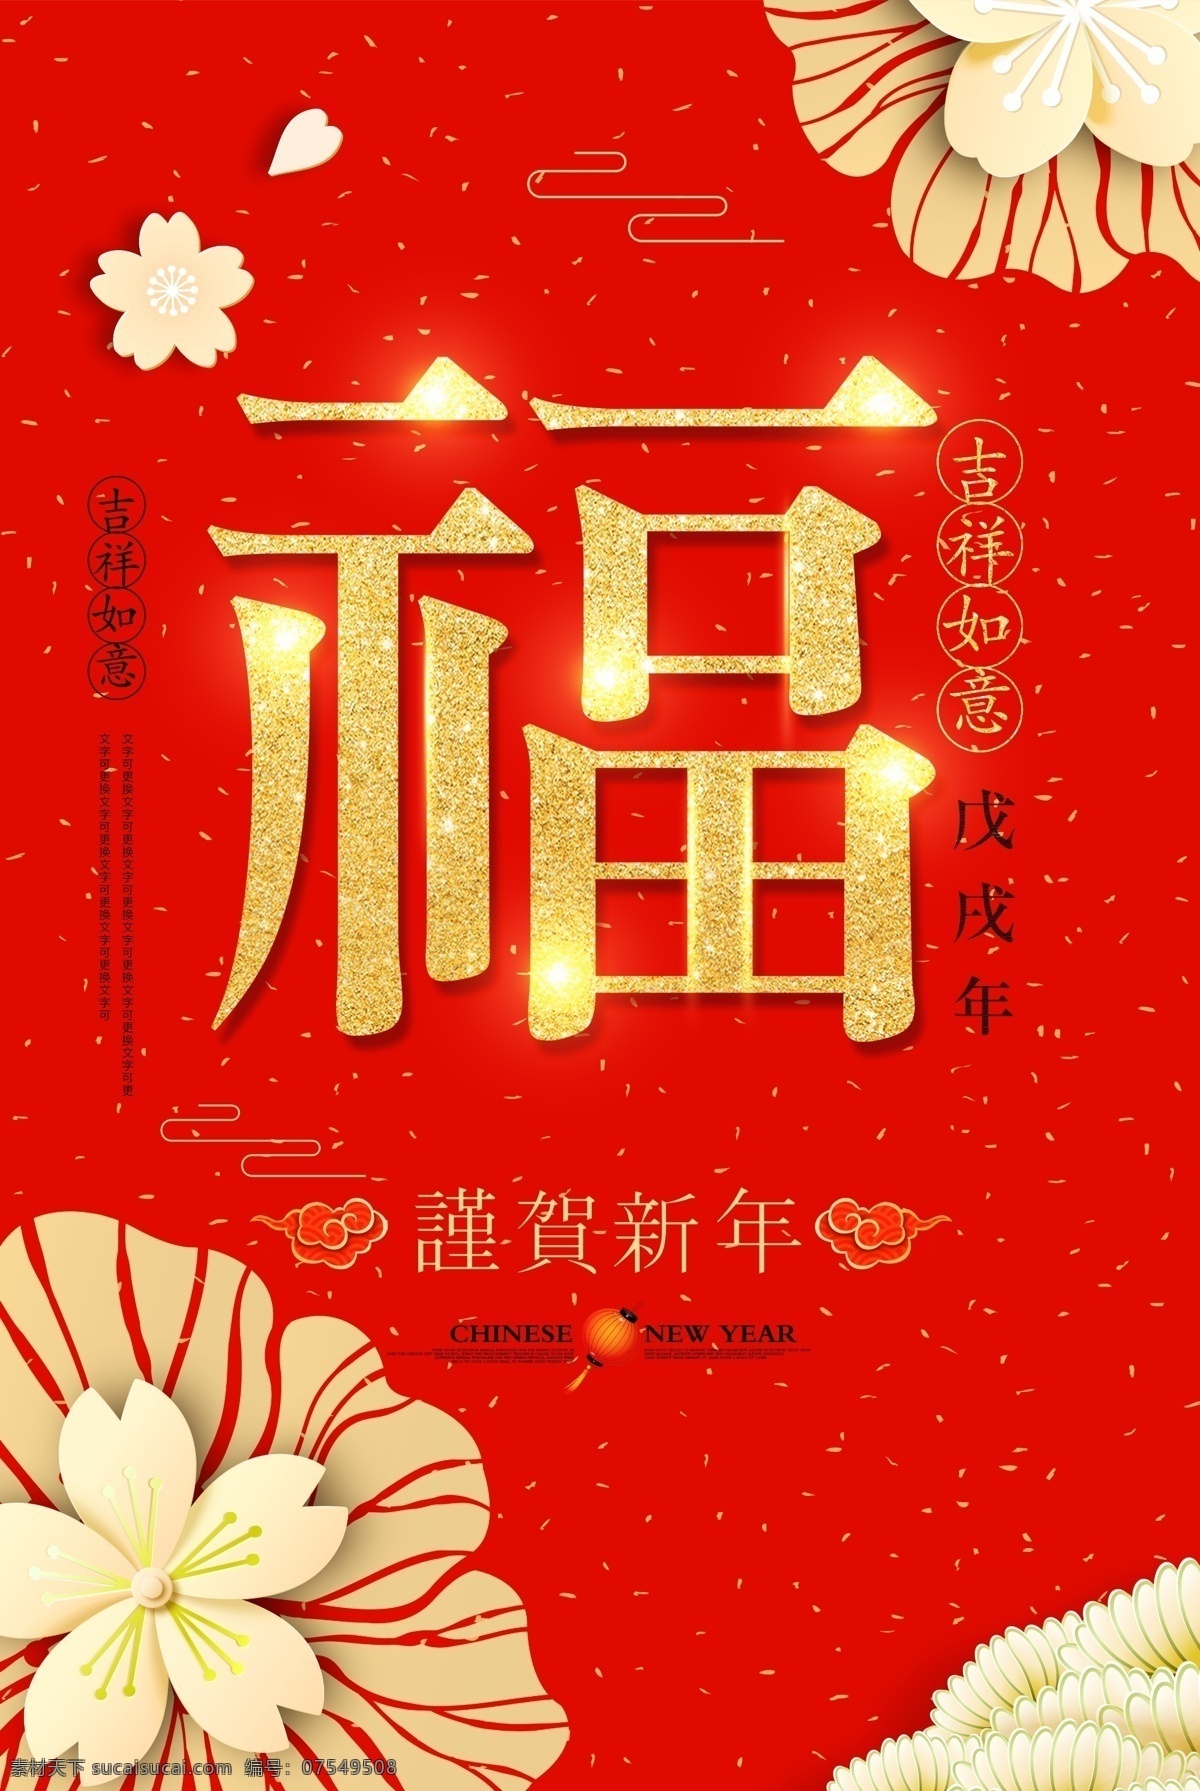 红色 2018 新春 新年 春节 海报 中国风 喜庆 古典 红包 梅花 桃花 舞狮子 福袋 狗年